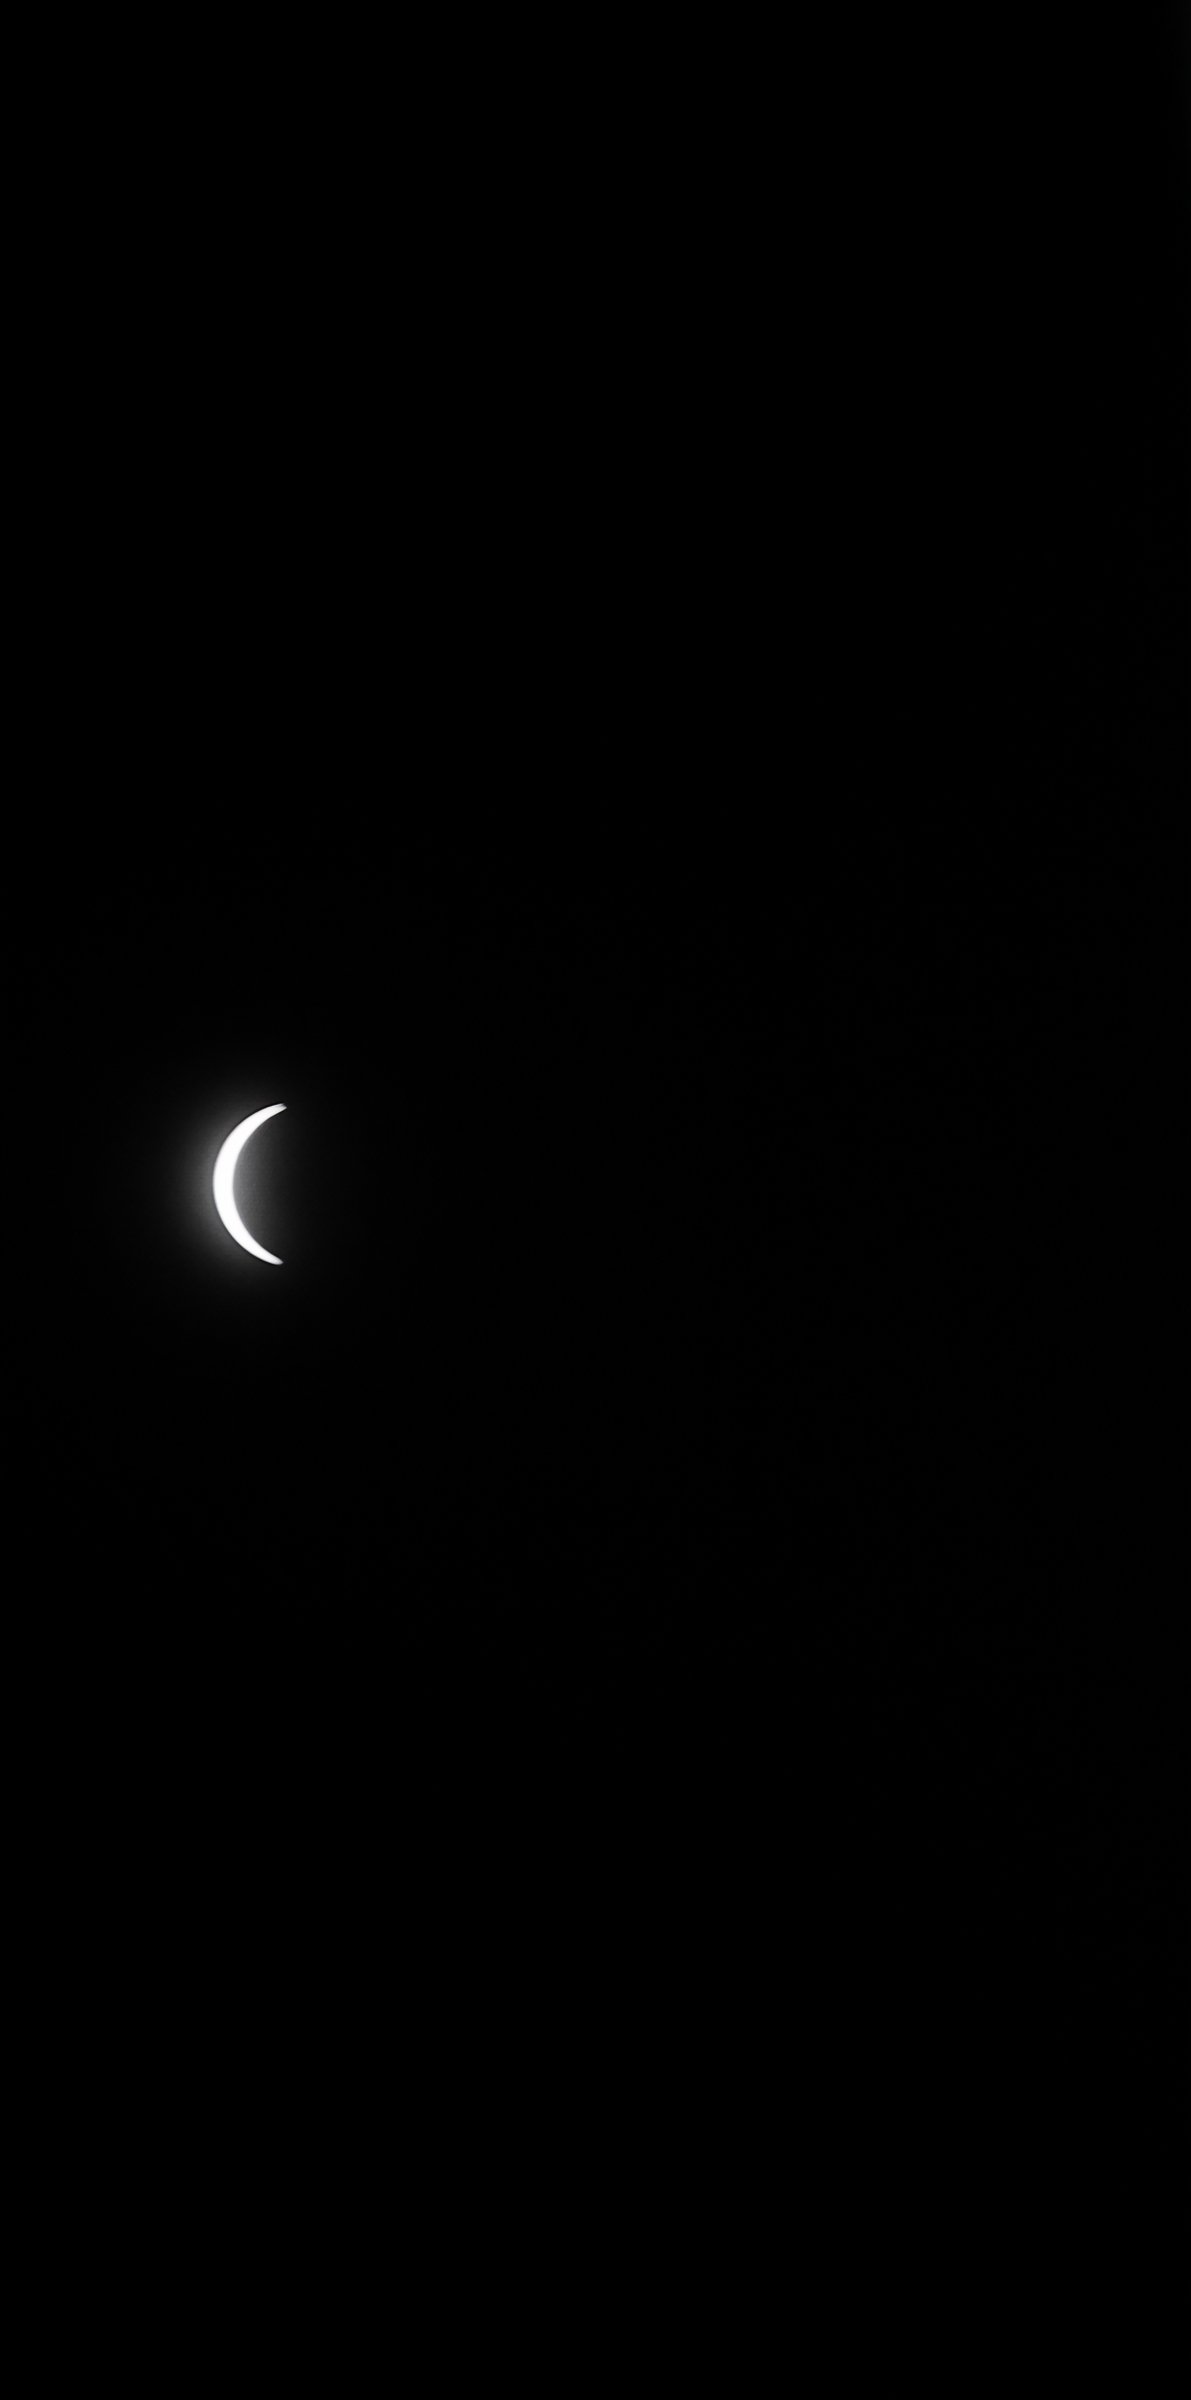 Eclipse Over Rockport